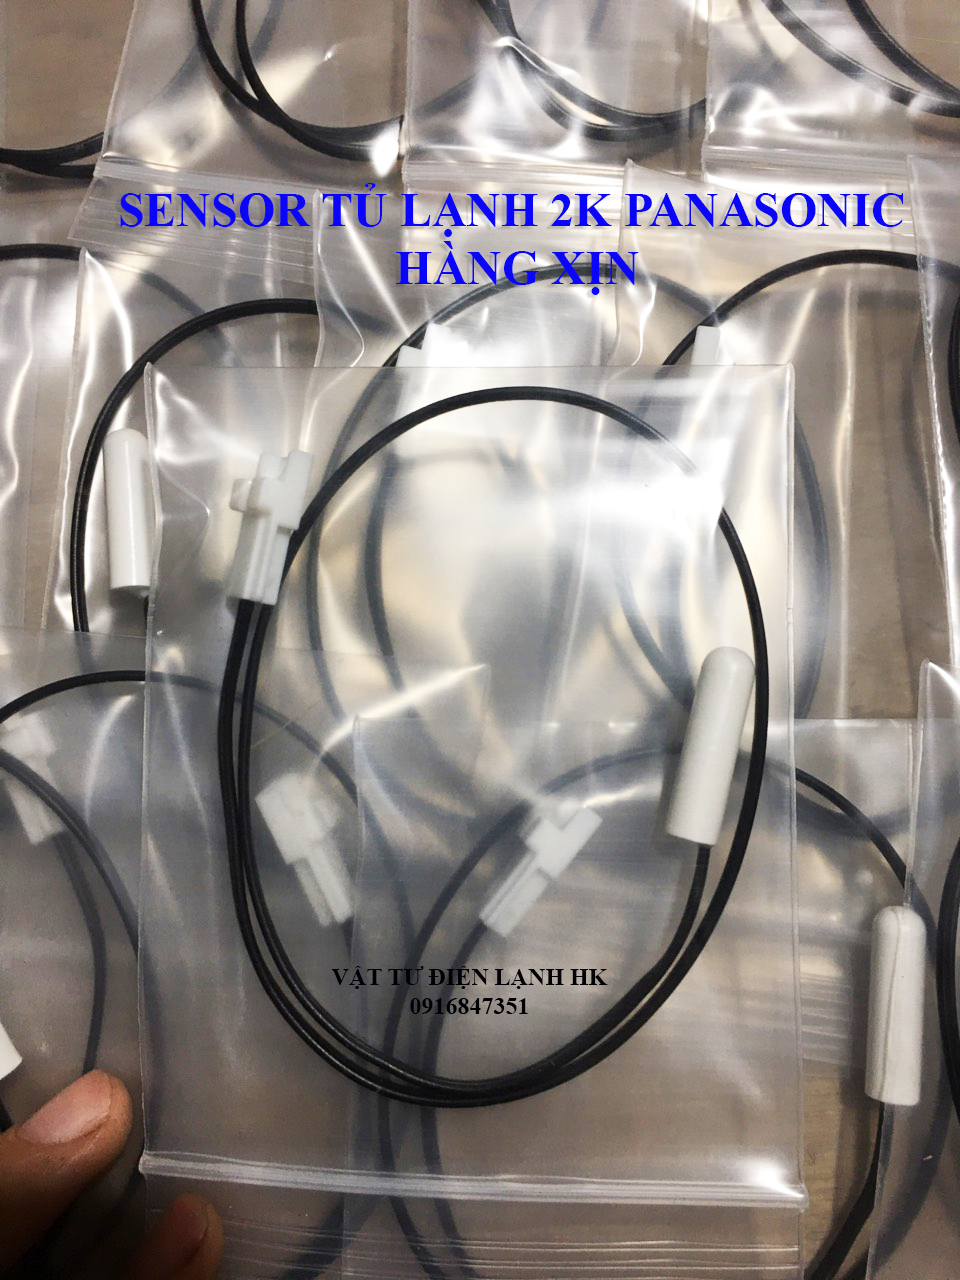 Sensor tủ lạnh 2K Panasonic- hàng xịn - Sen sơ cảm biến tủ Pana